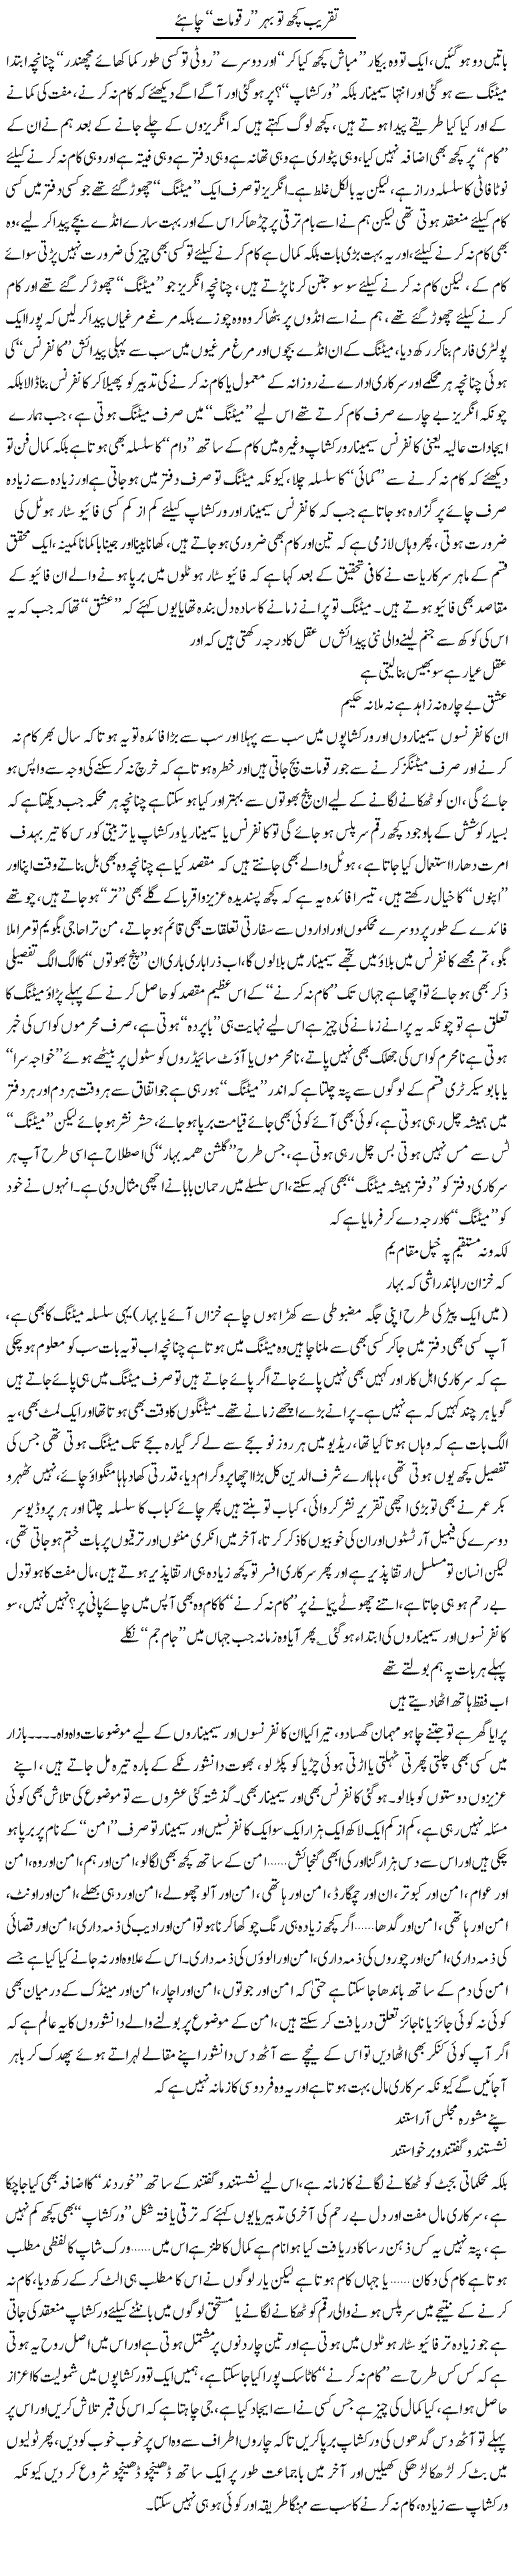 Taqreeb Kuch To Behar Raqumaat Chahye | Saad Ullah Jan Barq | Daily Urdu Columns